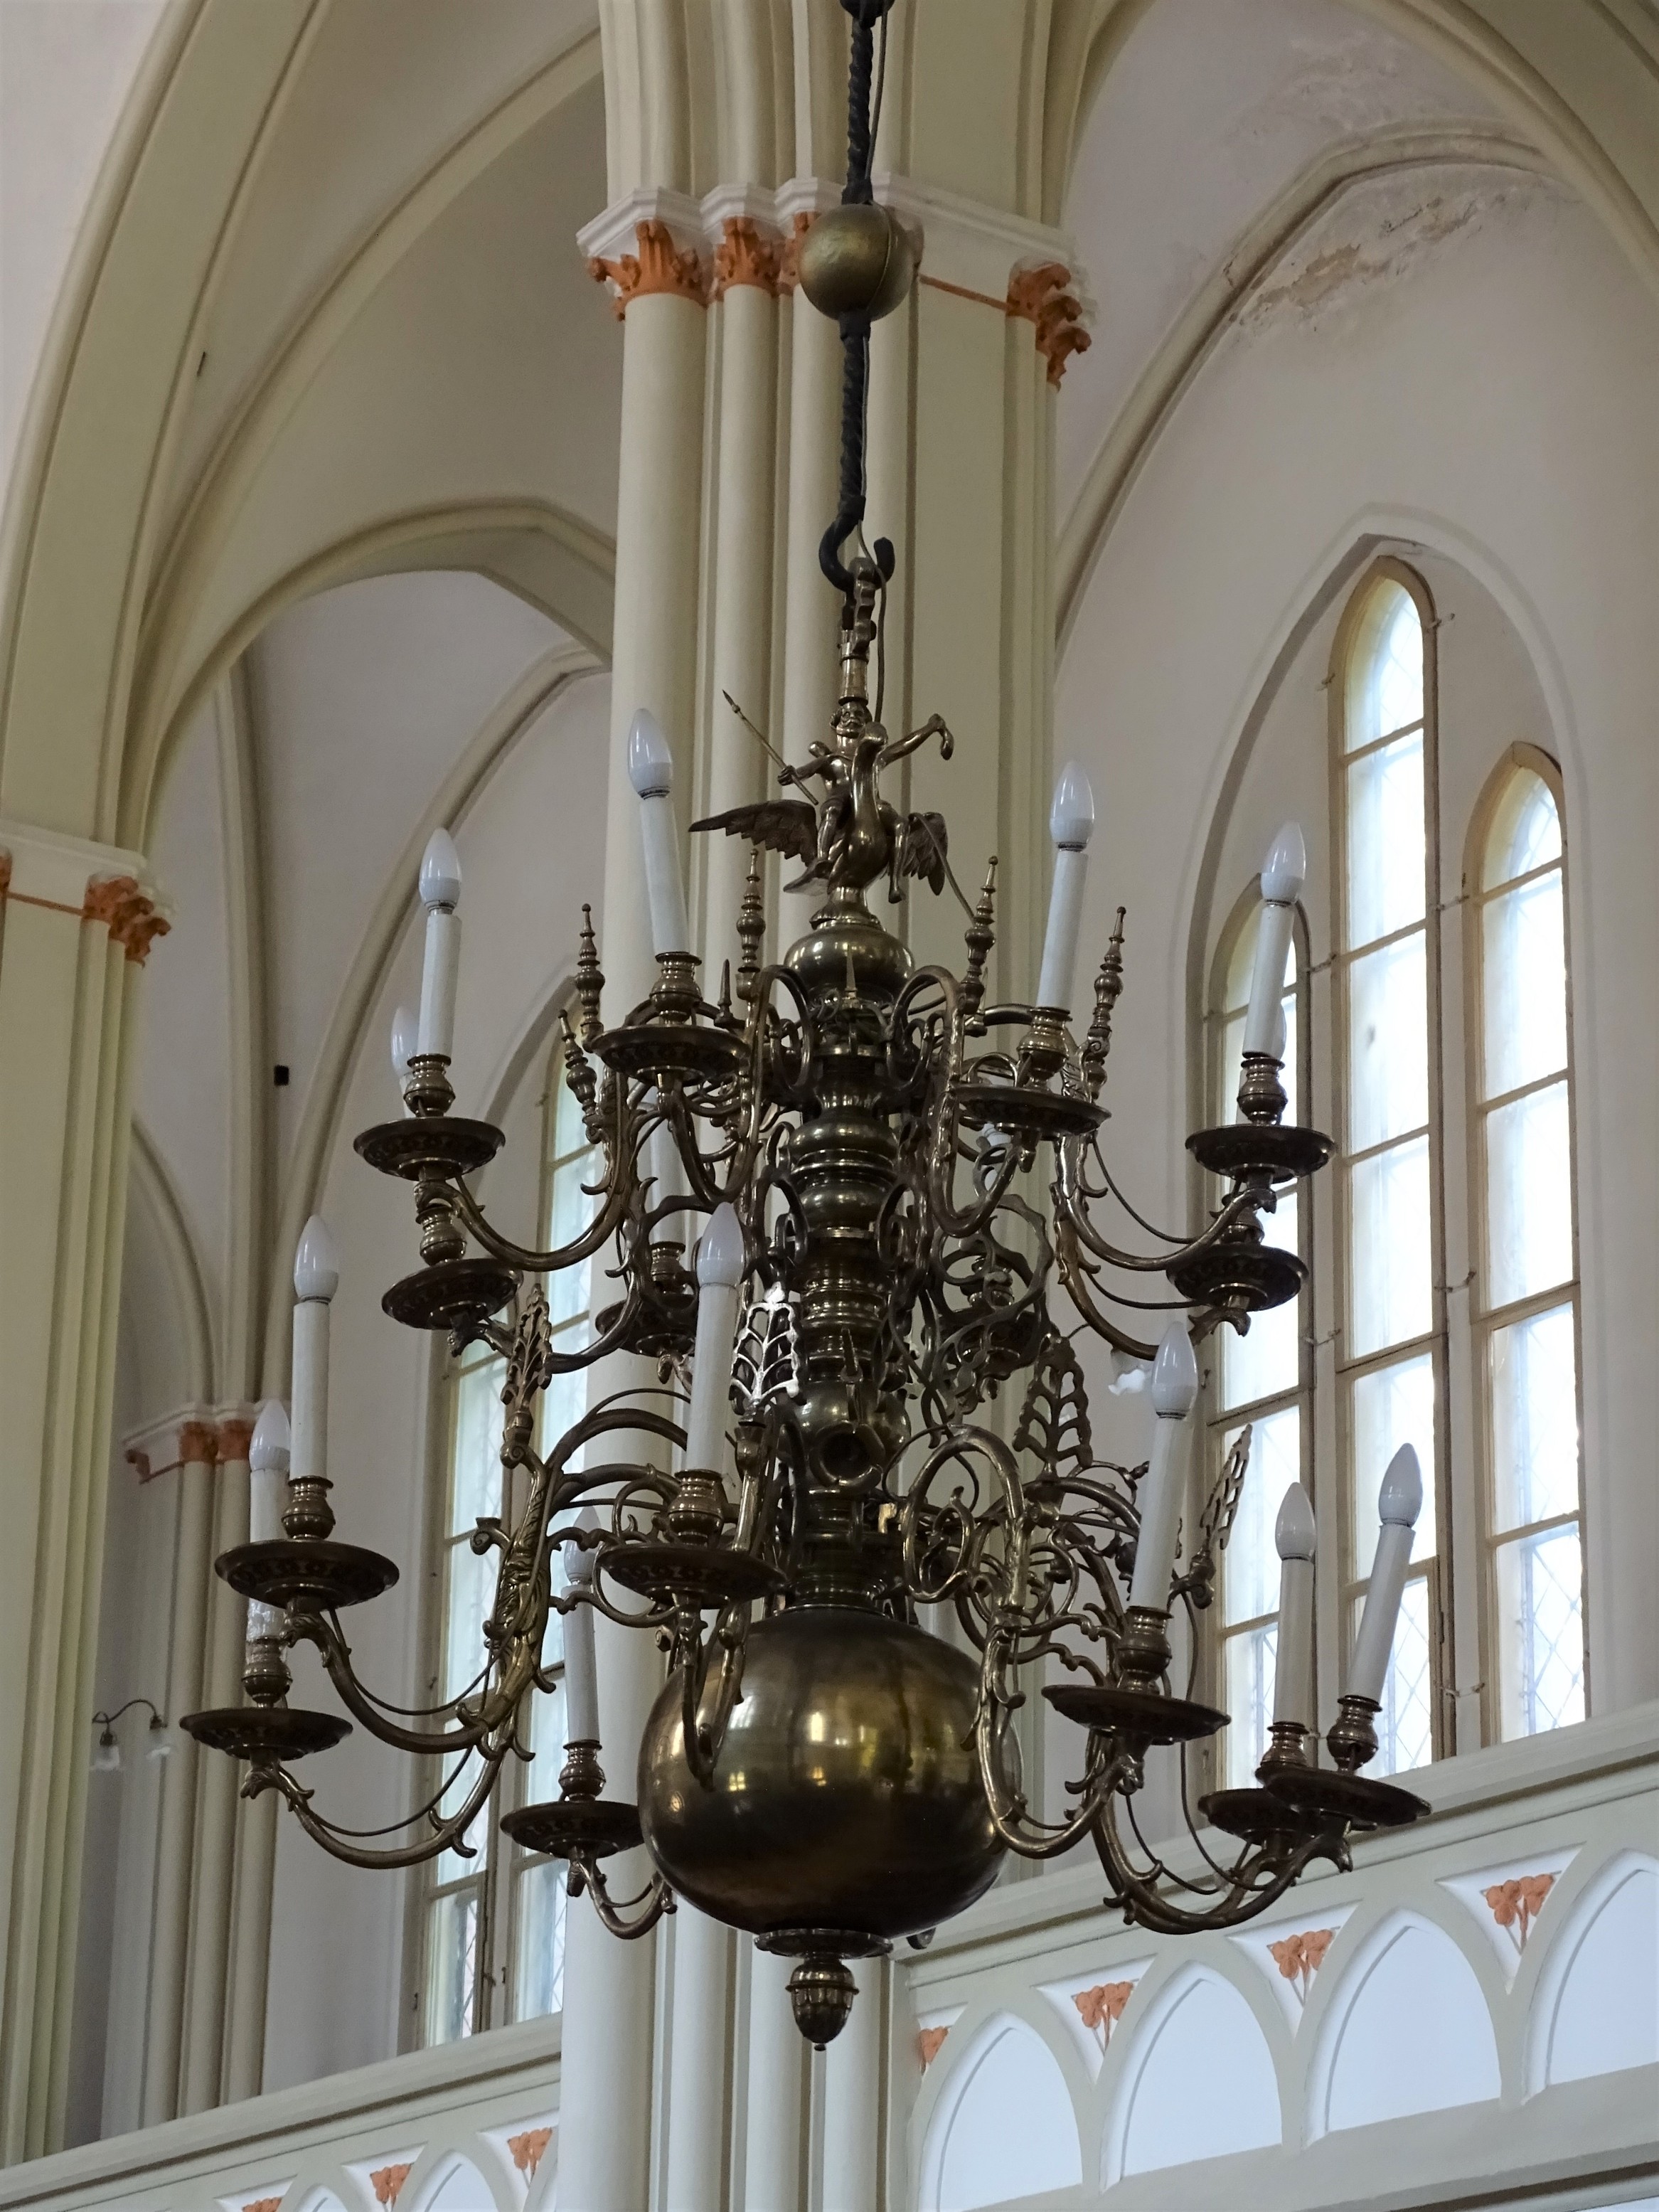 Chandelier, 1677, Liepāja St. Anne’s Evangelical Lutheran Church. Photo by Alantė Valtaitė-Gagač, 2021